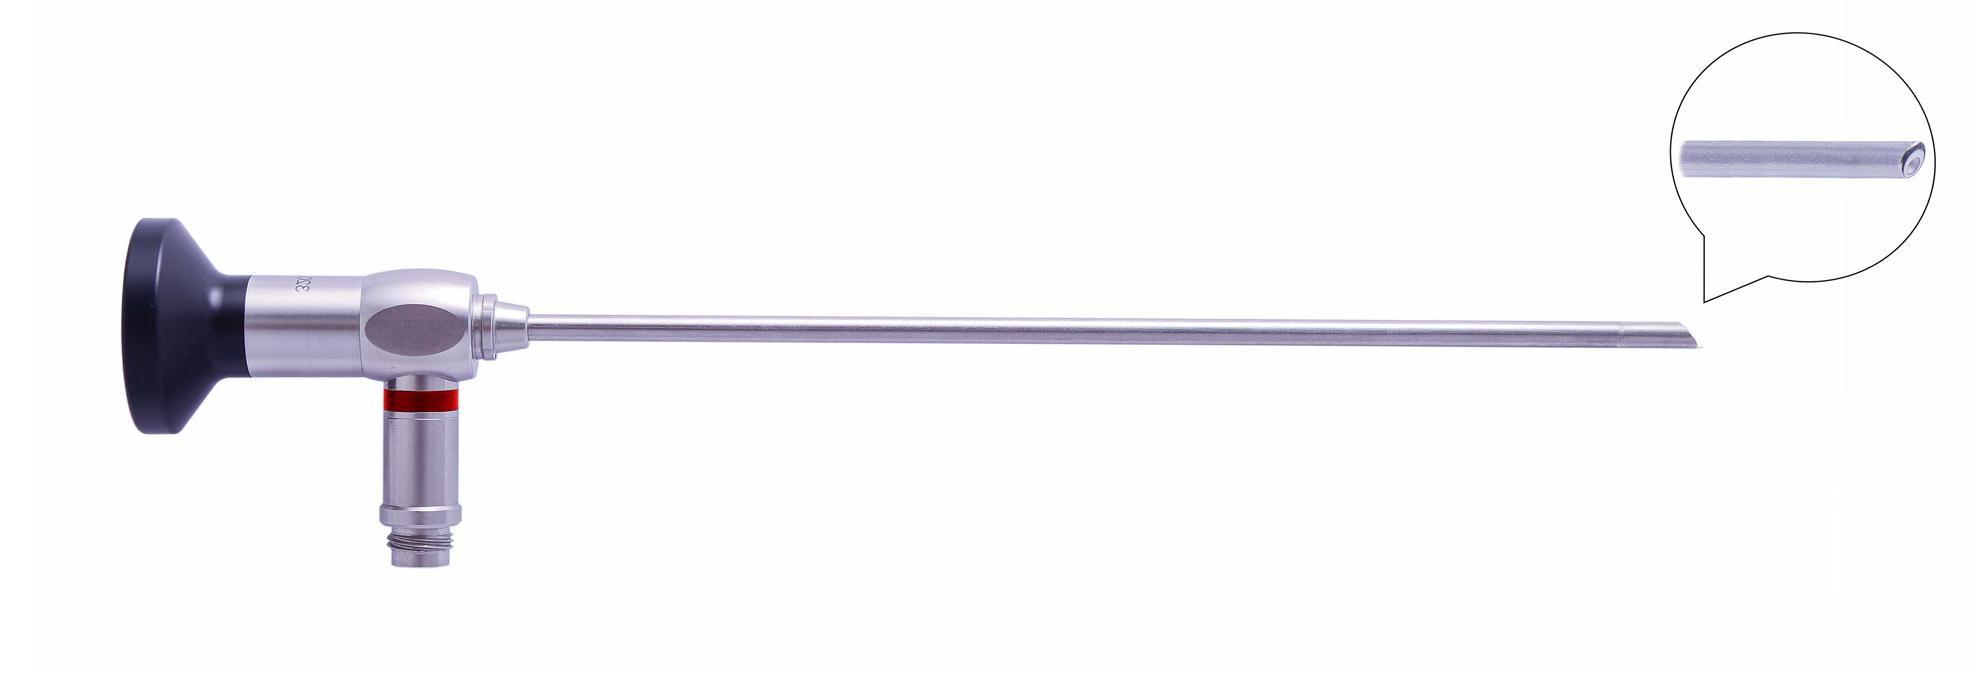 Трубка оптическая (артроскопическая, риноскопическая) ТОАР-014 диам. 4 мм, с углом наблюдения 30 гр.